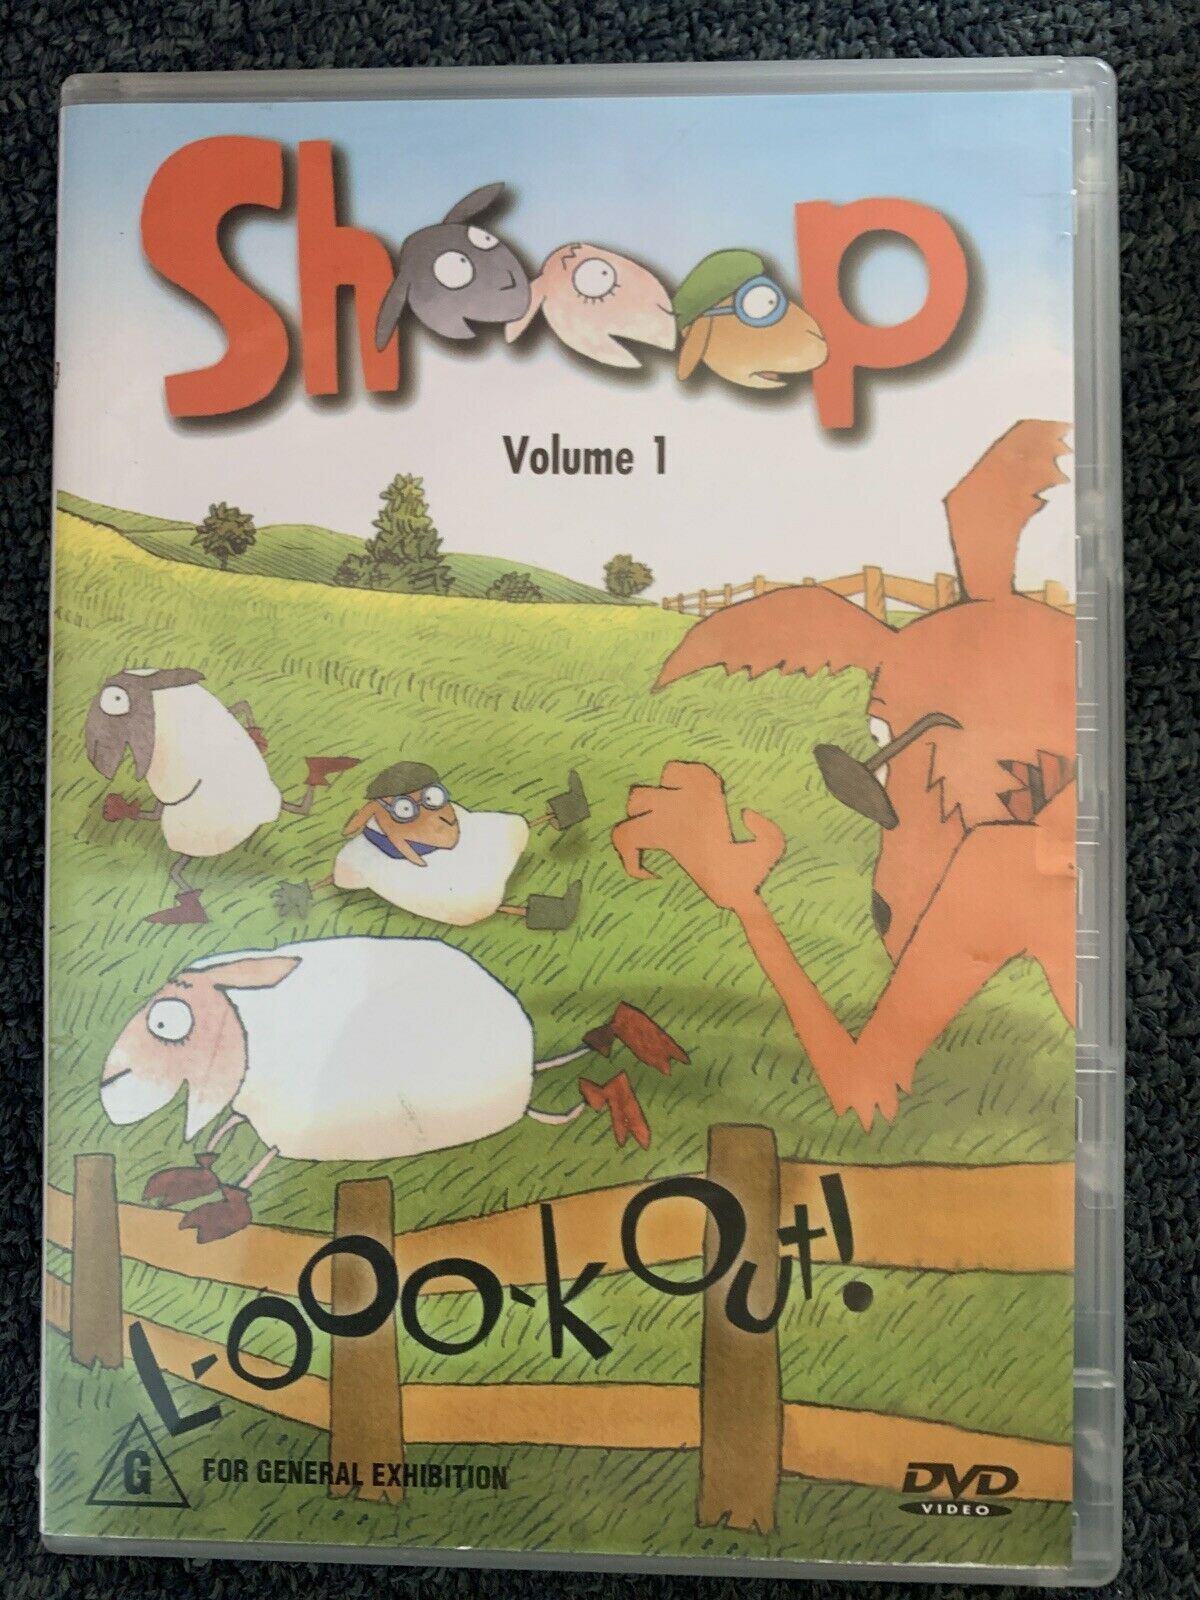 Sheeep - Volume 1 (DVD, 2000) Region 4